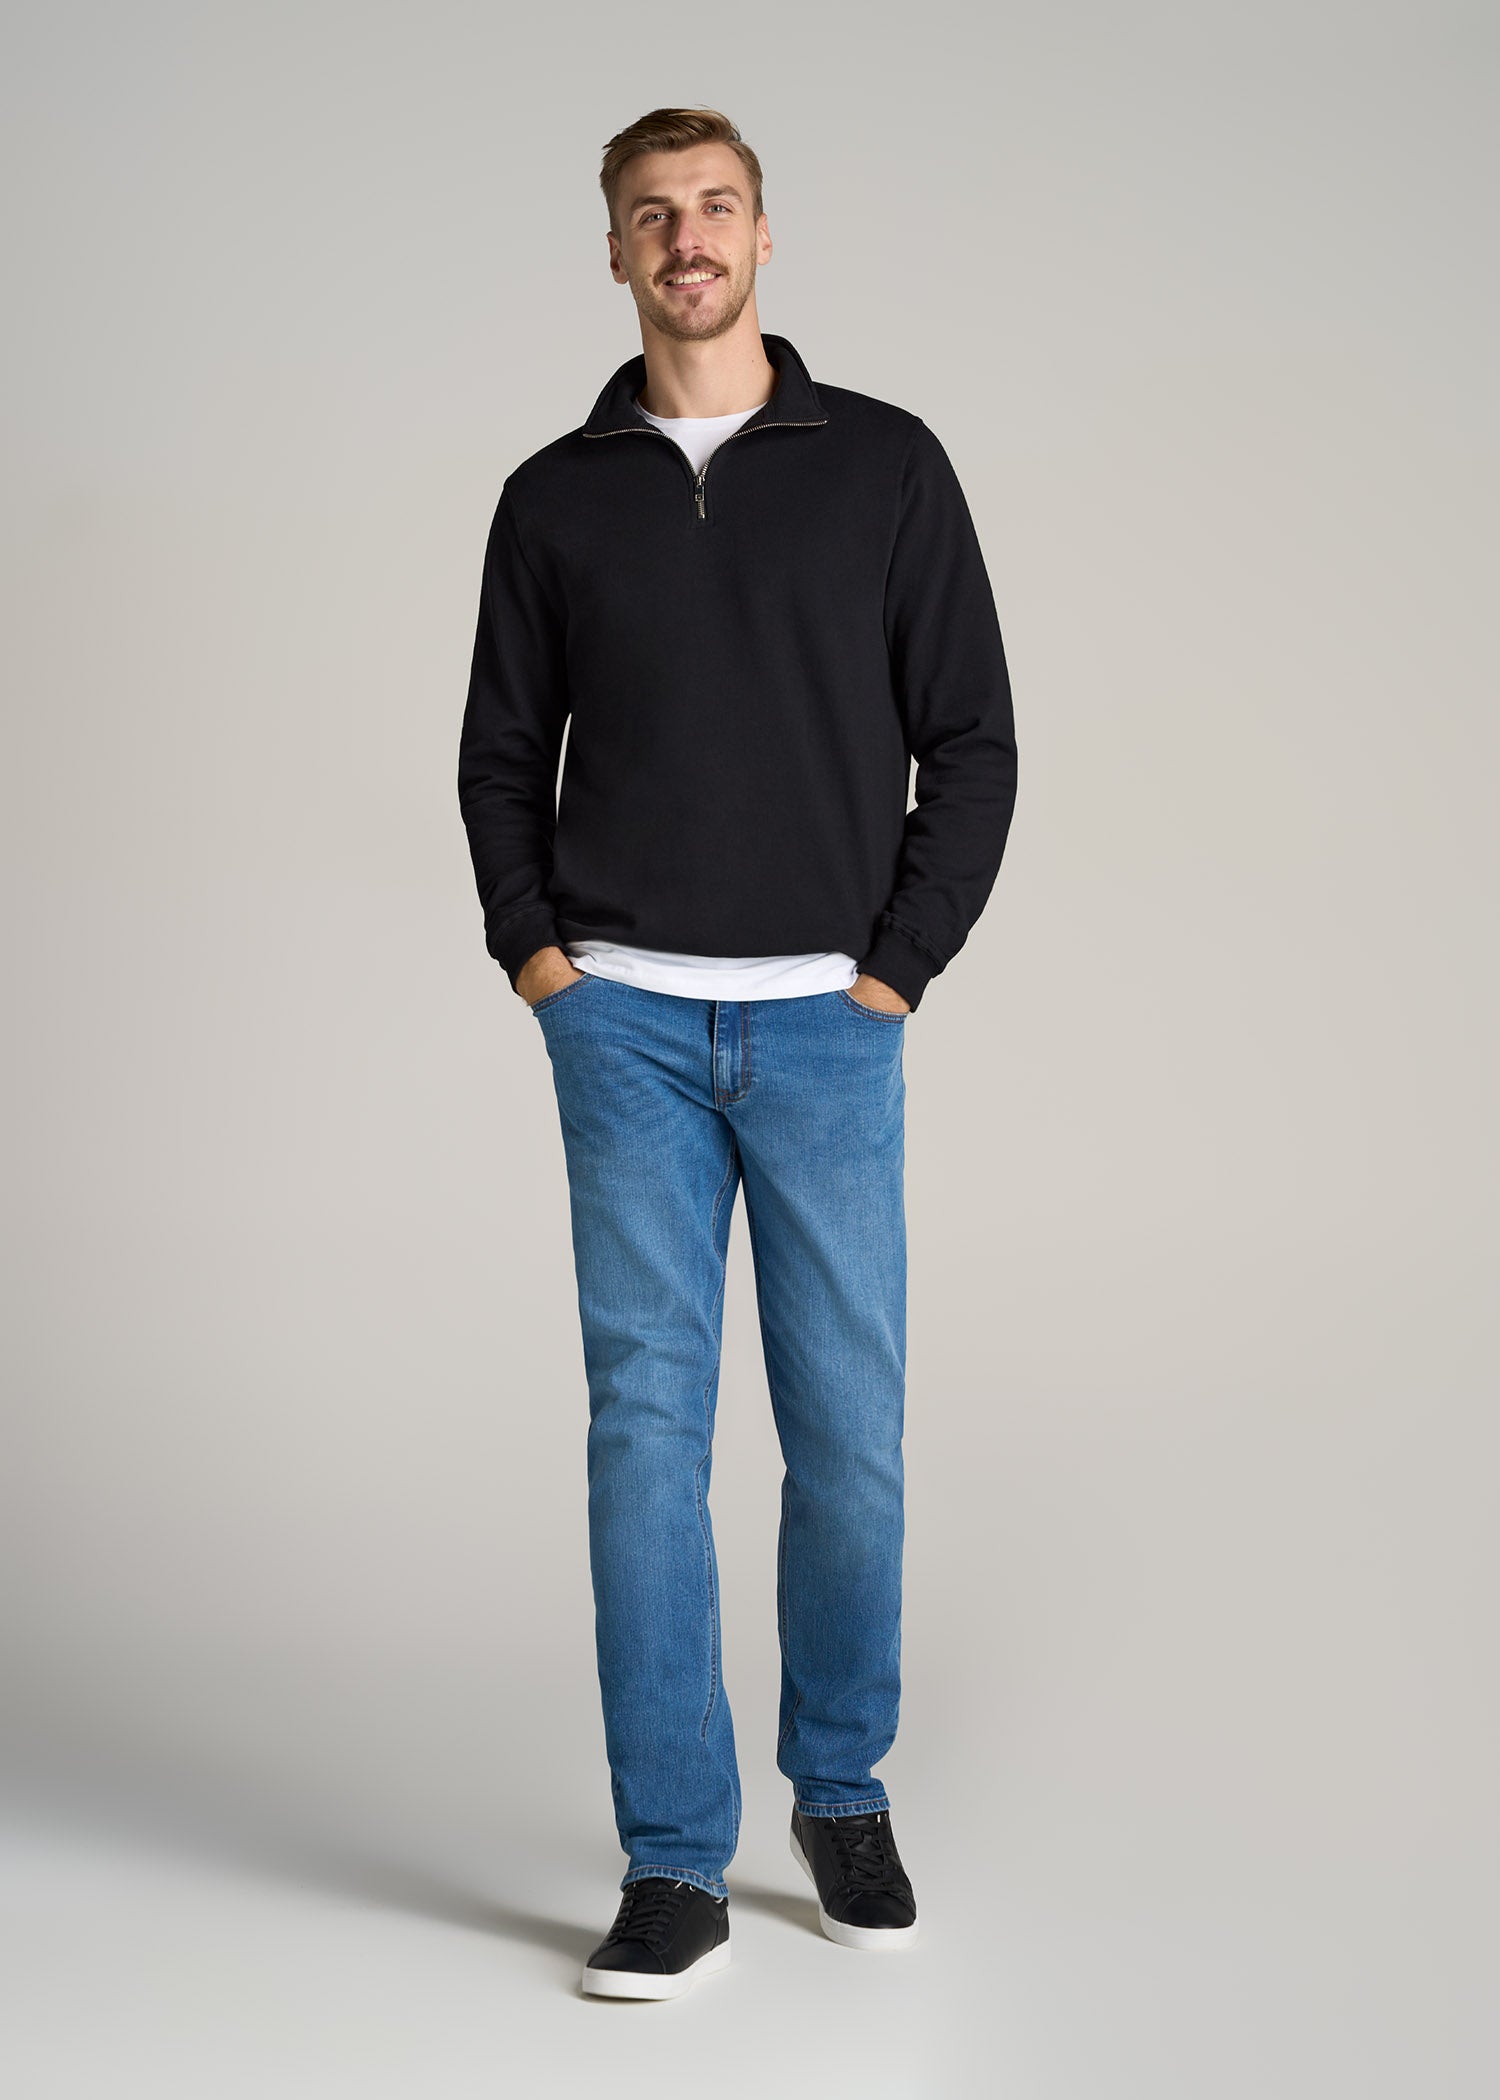     American-Tall-Men-Wearever-Fleece-Quarter-Zip-Sweatshirt-Black-full